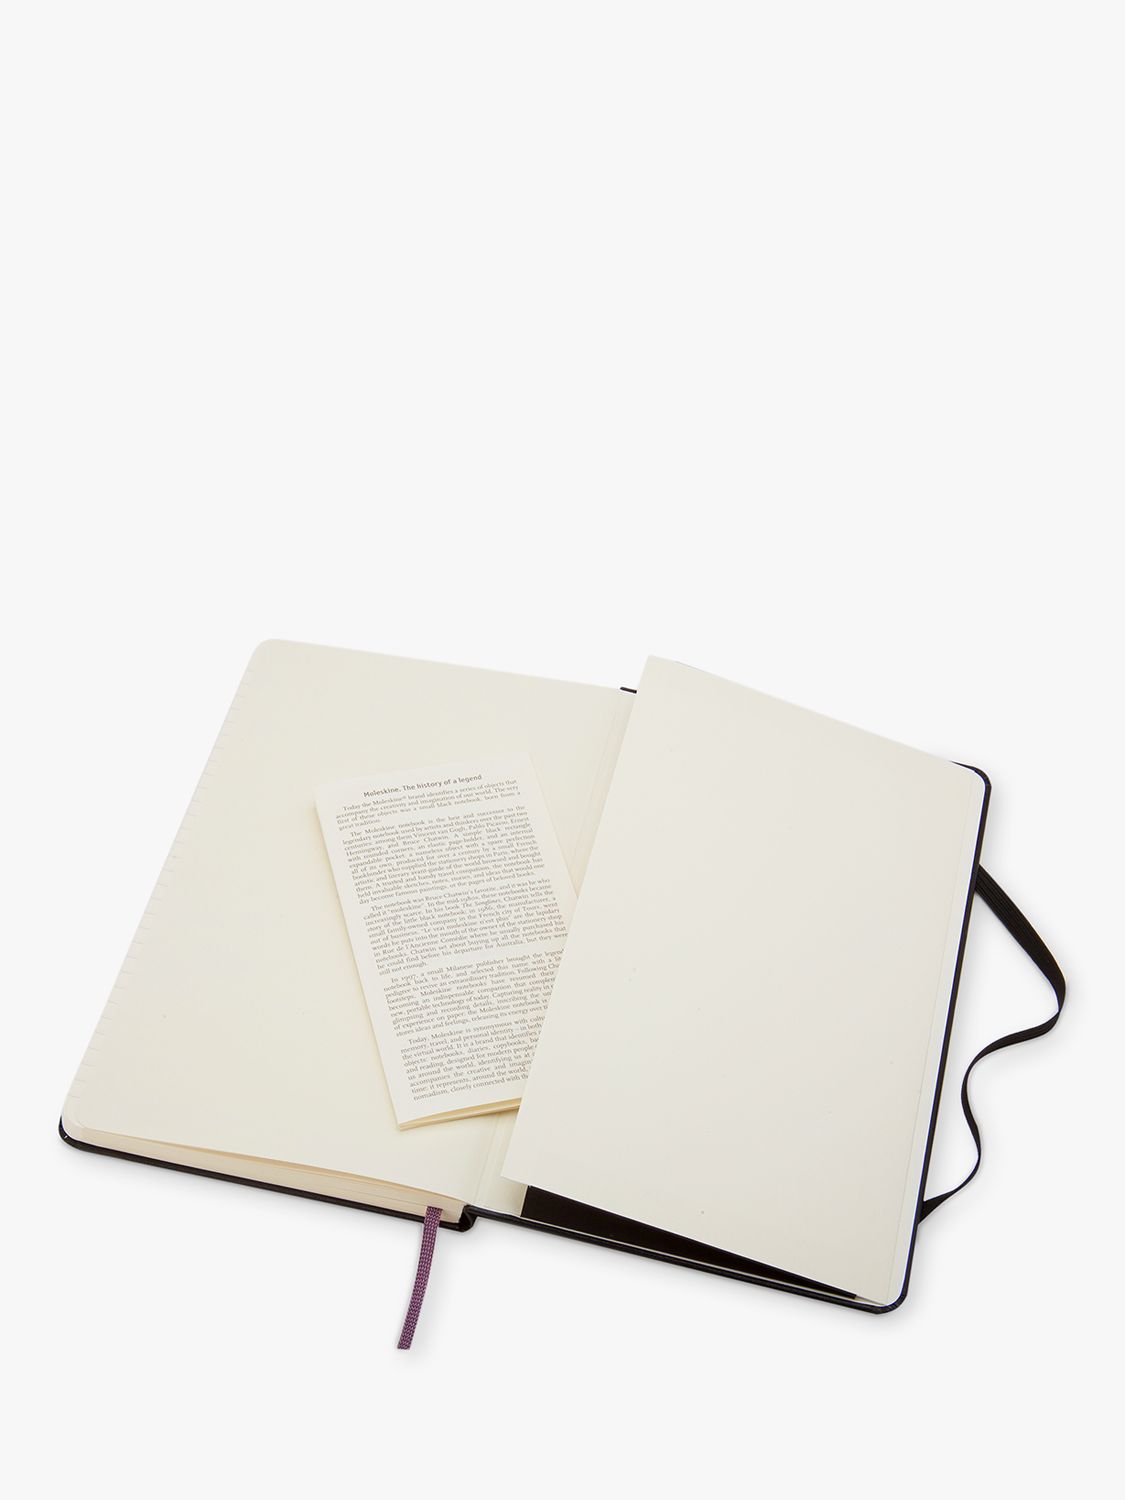 Moleskine Pocket Sized Hard Cover Ruled Notebook